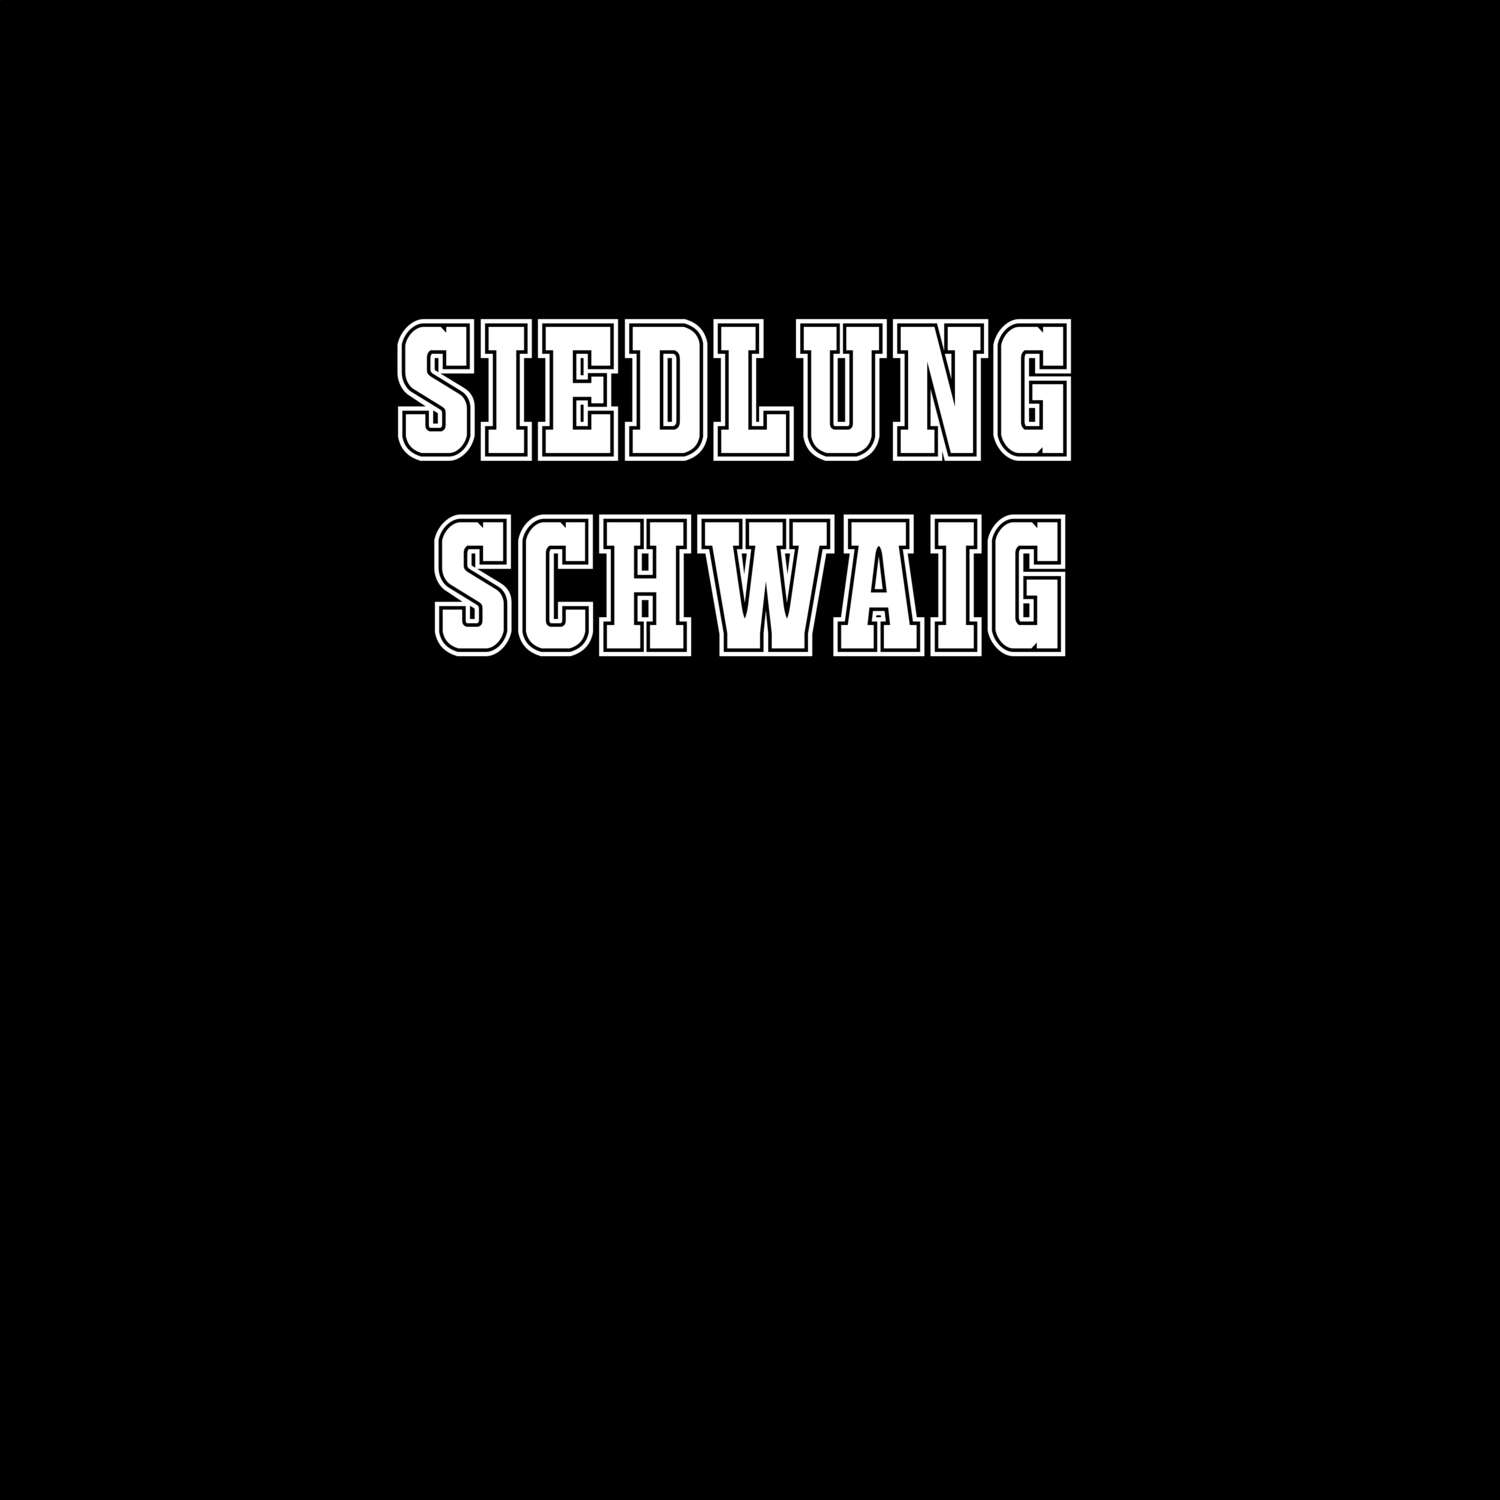 Siedlung Schwaig T-Shirt »Classic«